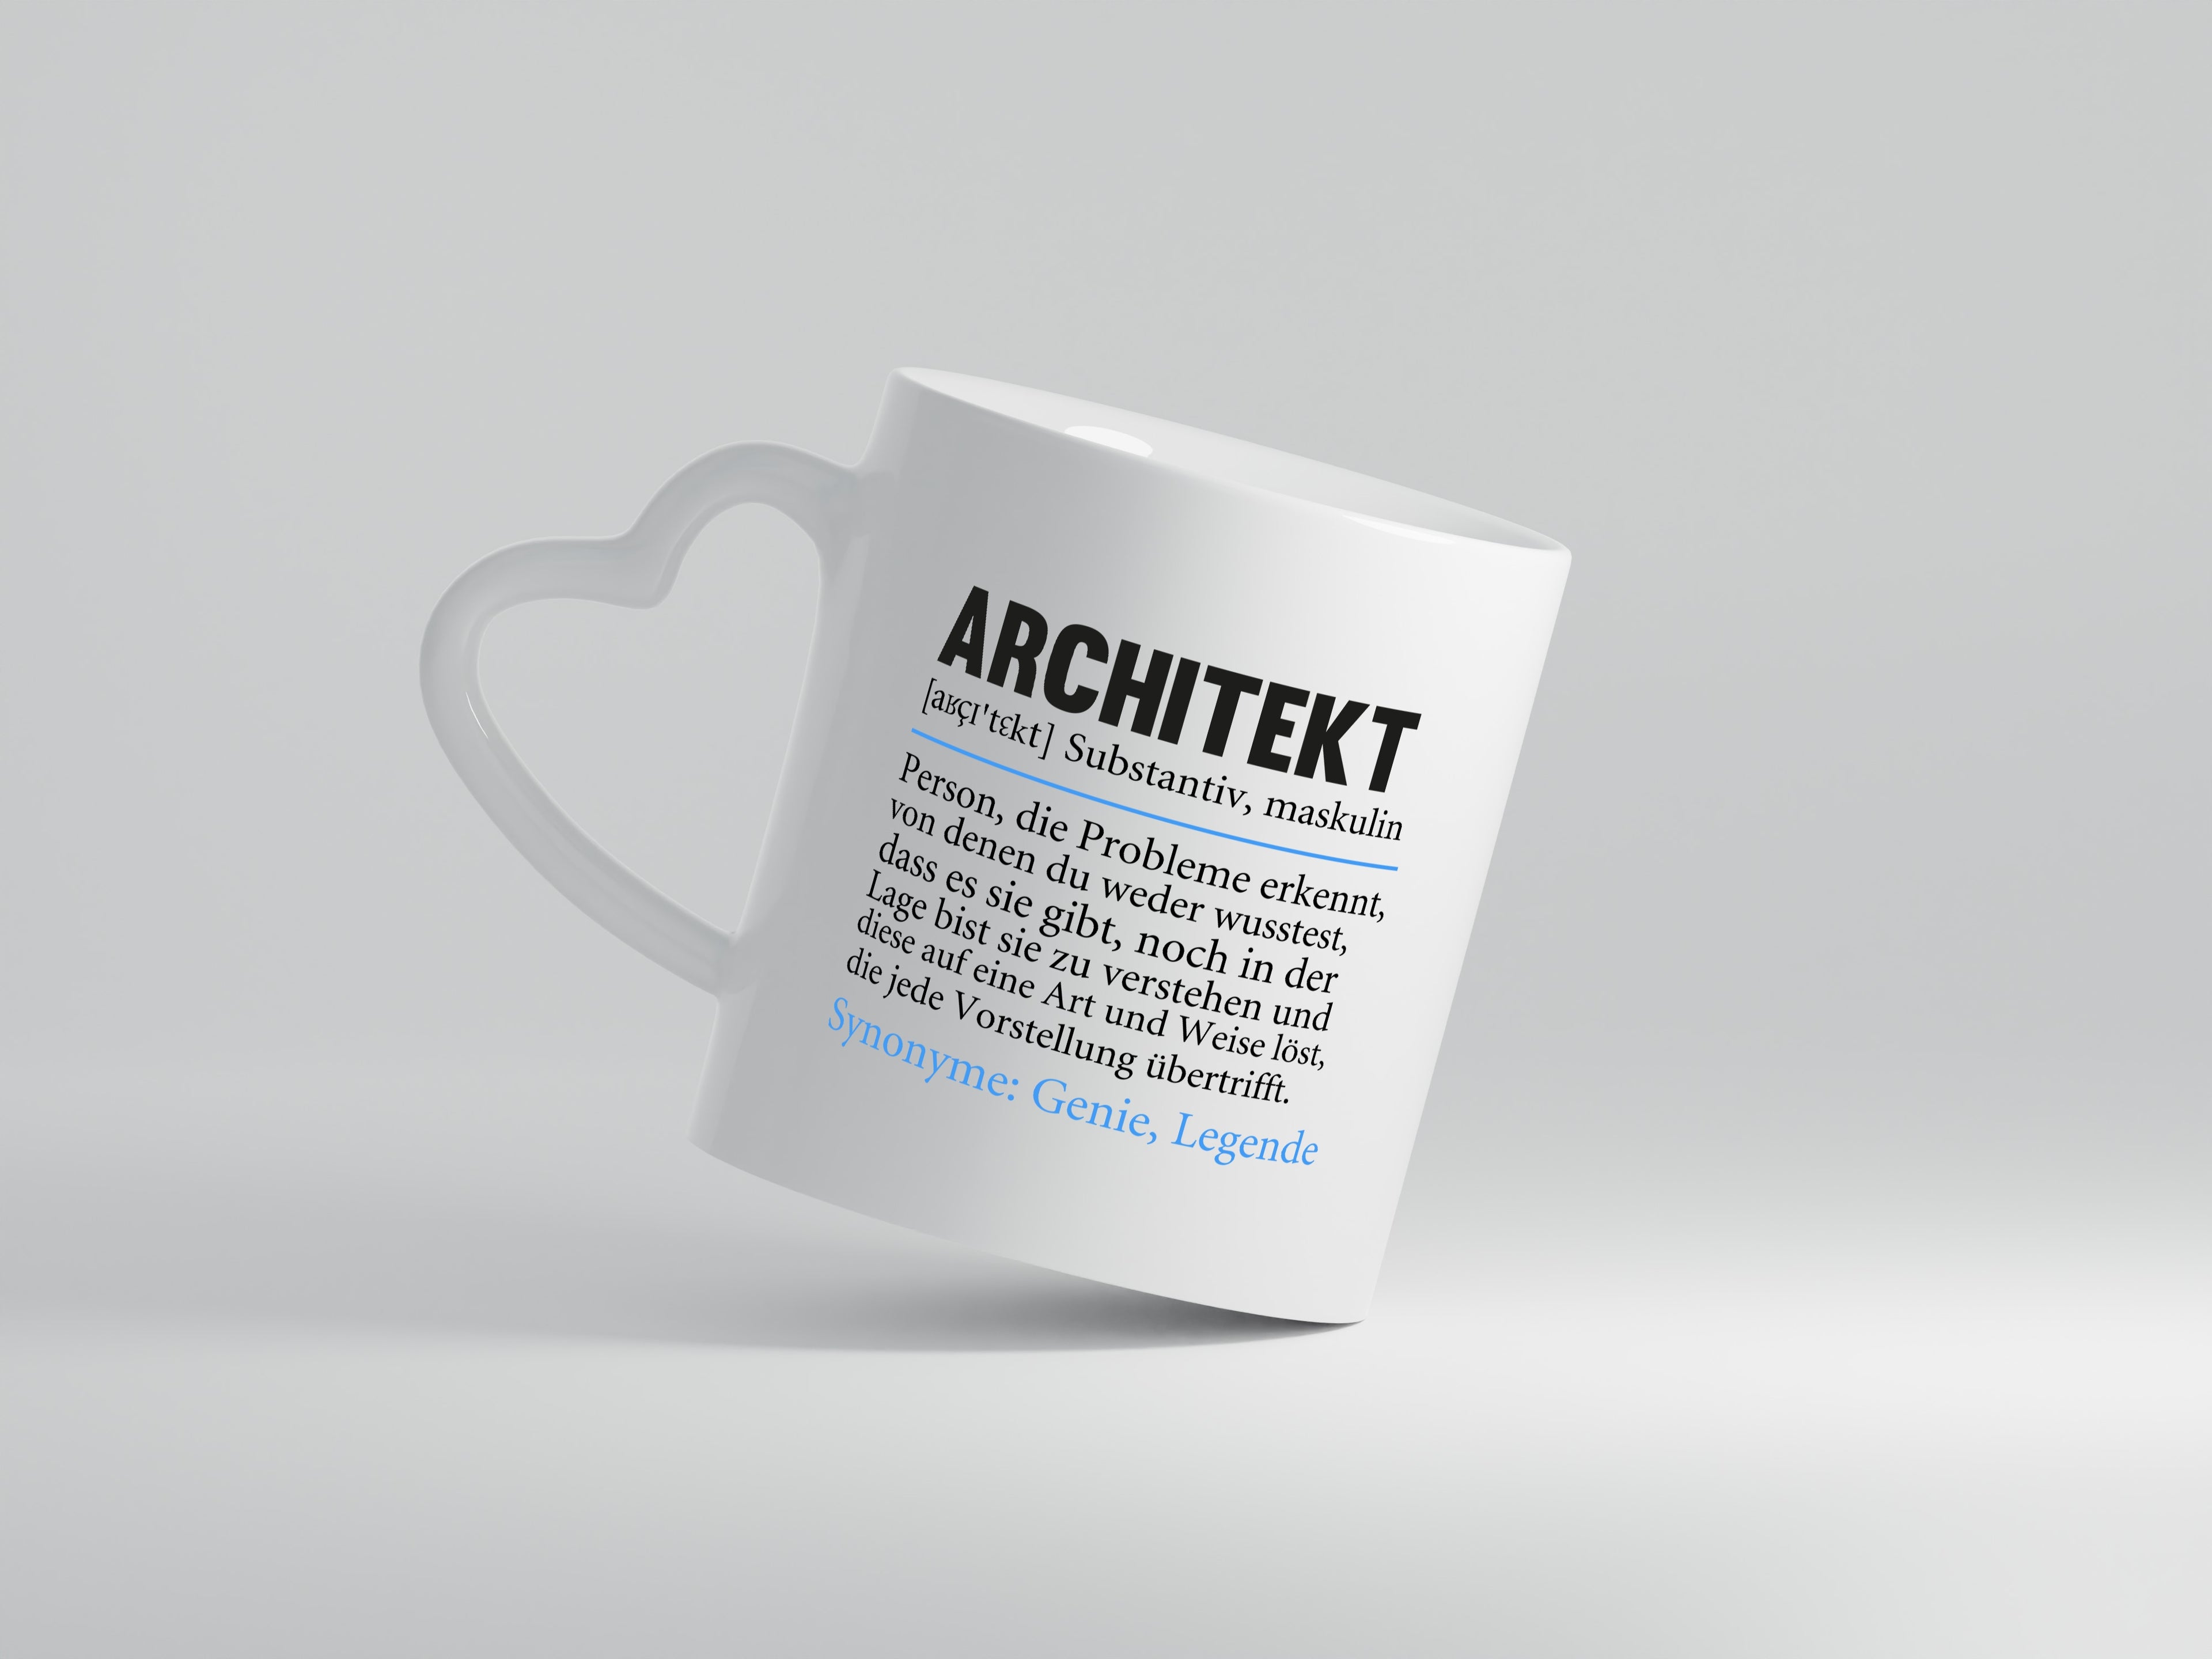 Architekt Tasse | witziger Spruch | Architektur Büro - Herzhenkel Tasse - Kaffeetasse / Geschenk / Familie